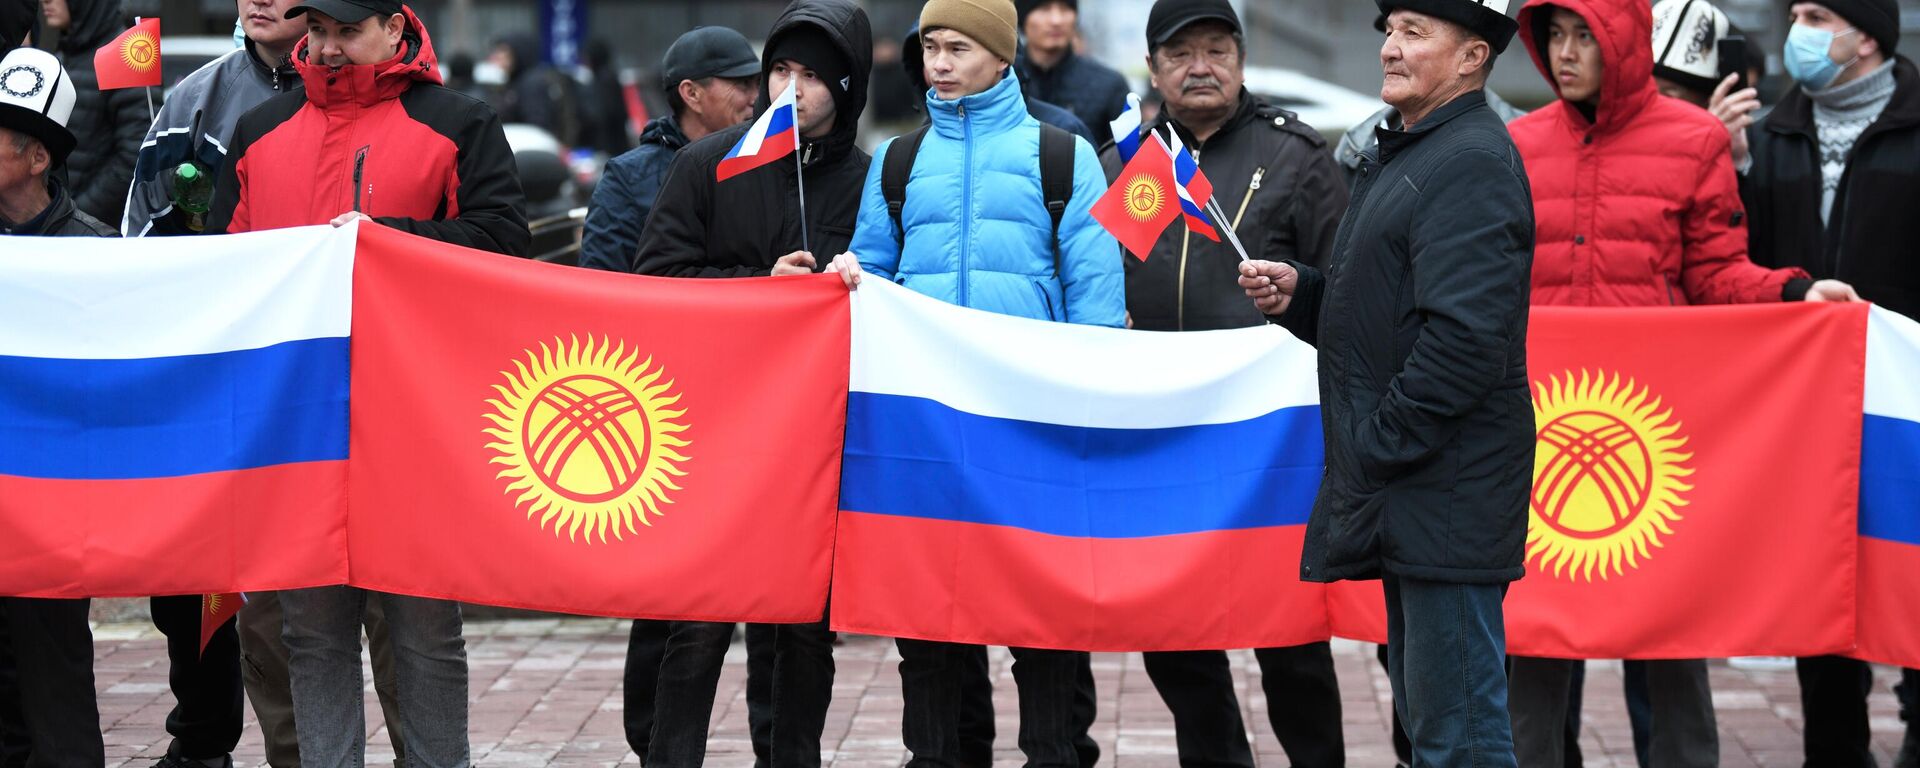 Участники митинга в поддержку России в Бишкеке. Архивное фото - Sputnik Кыргызстан, 1920, 22.12.2022